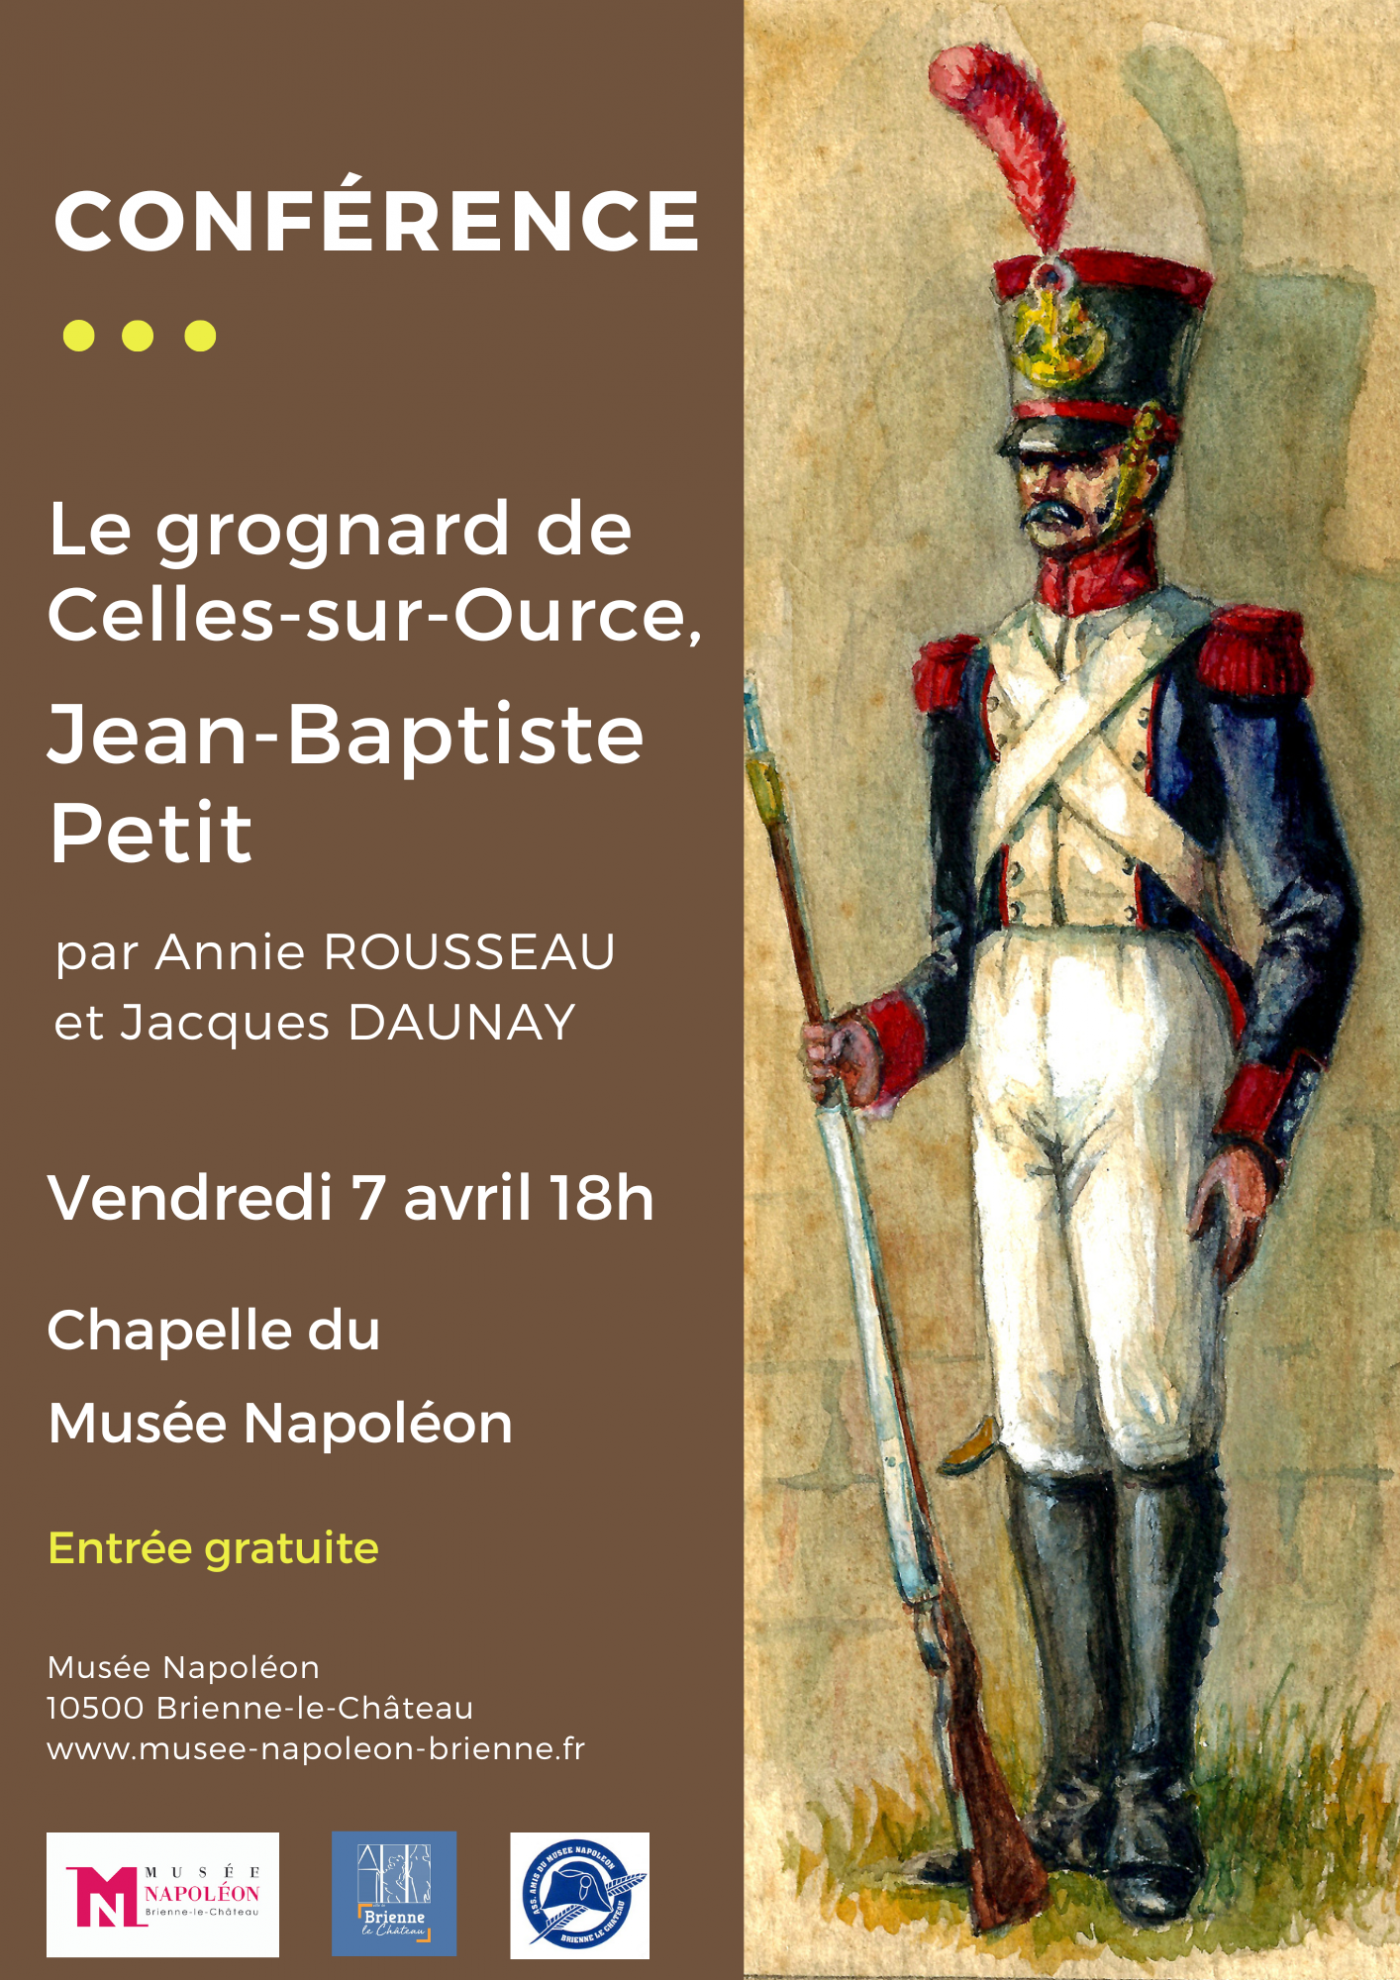 Conférence "Le grognard de Celles-sur-Ource, Jean-Baptiste Petit"